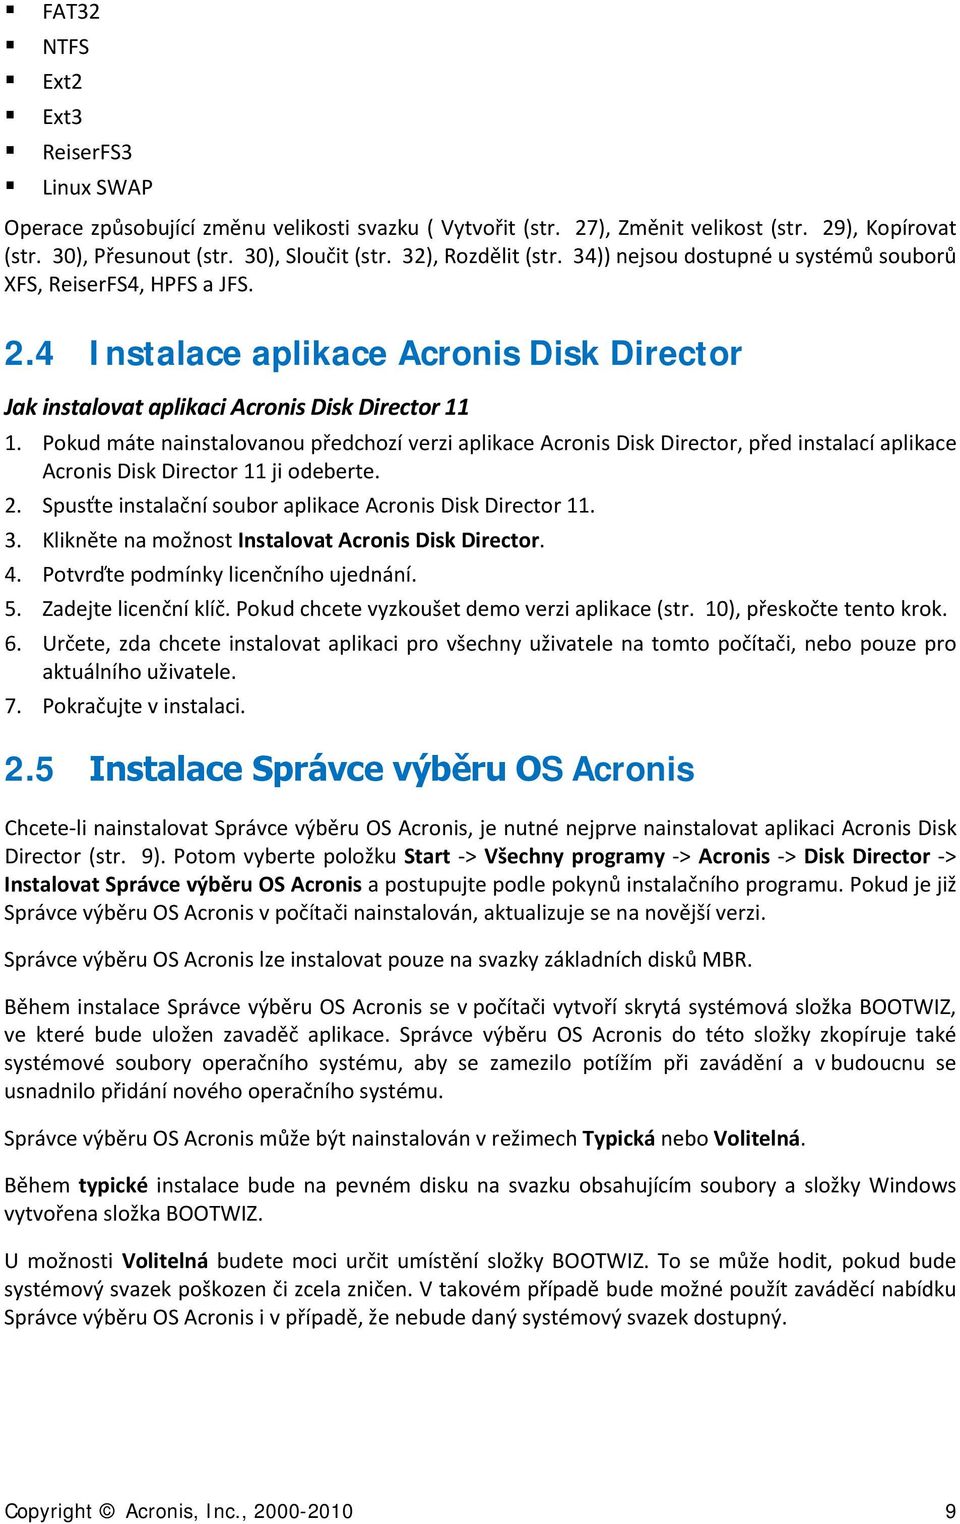 Pokud máte nainstalovanou předchozí verzi aplikace Acronis Disk Director, před instalací aplikace Acronis Disk Director 11 ji odeberte. 2. Spusťte instalační soubor aplikace Acronis Disk Director 11.